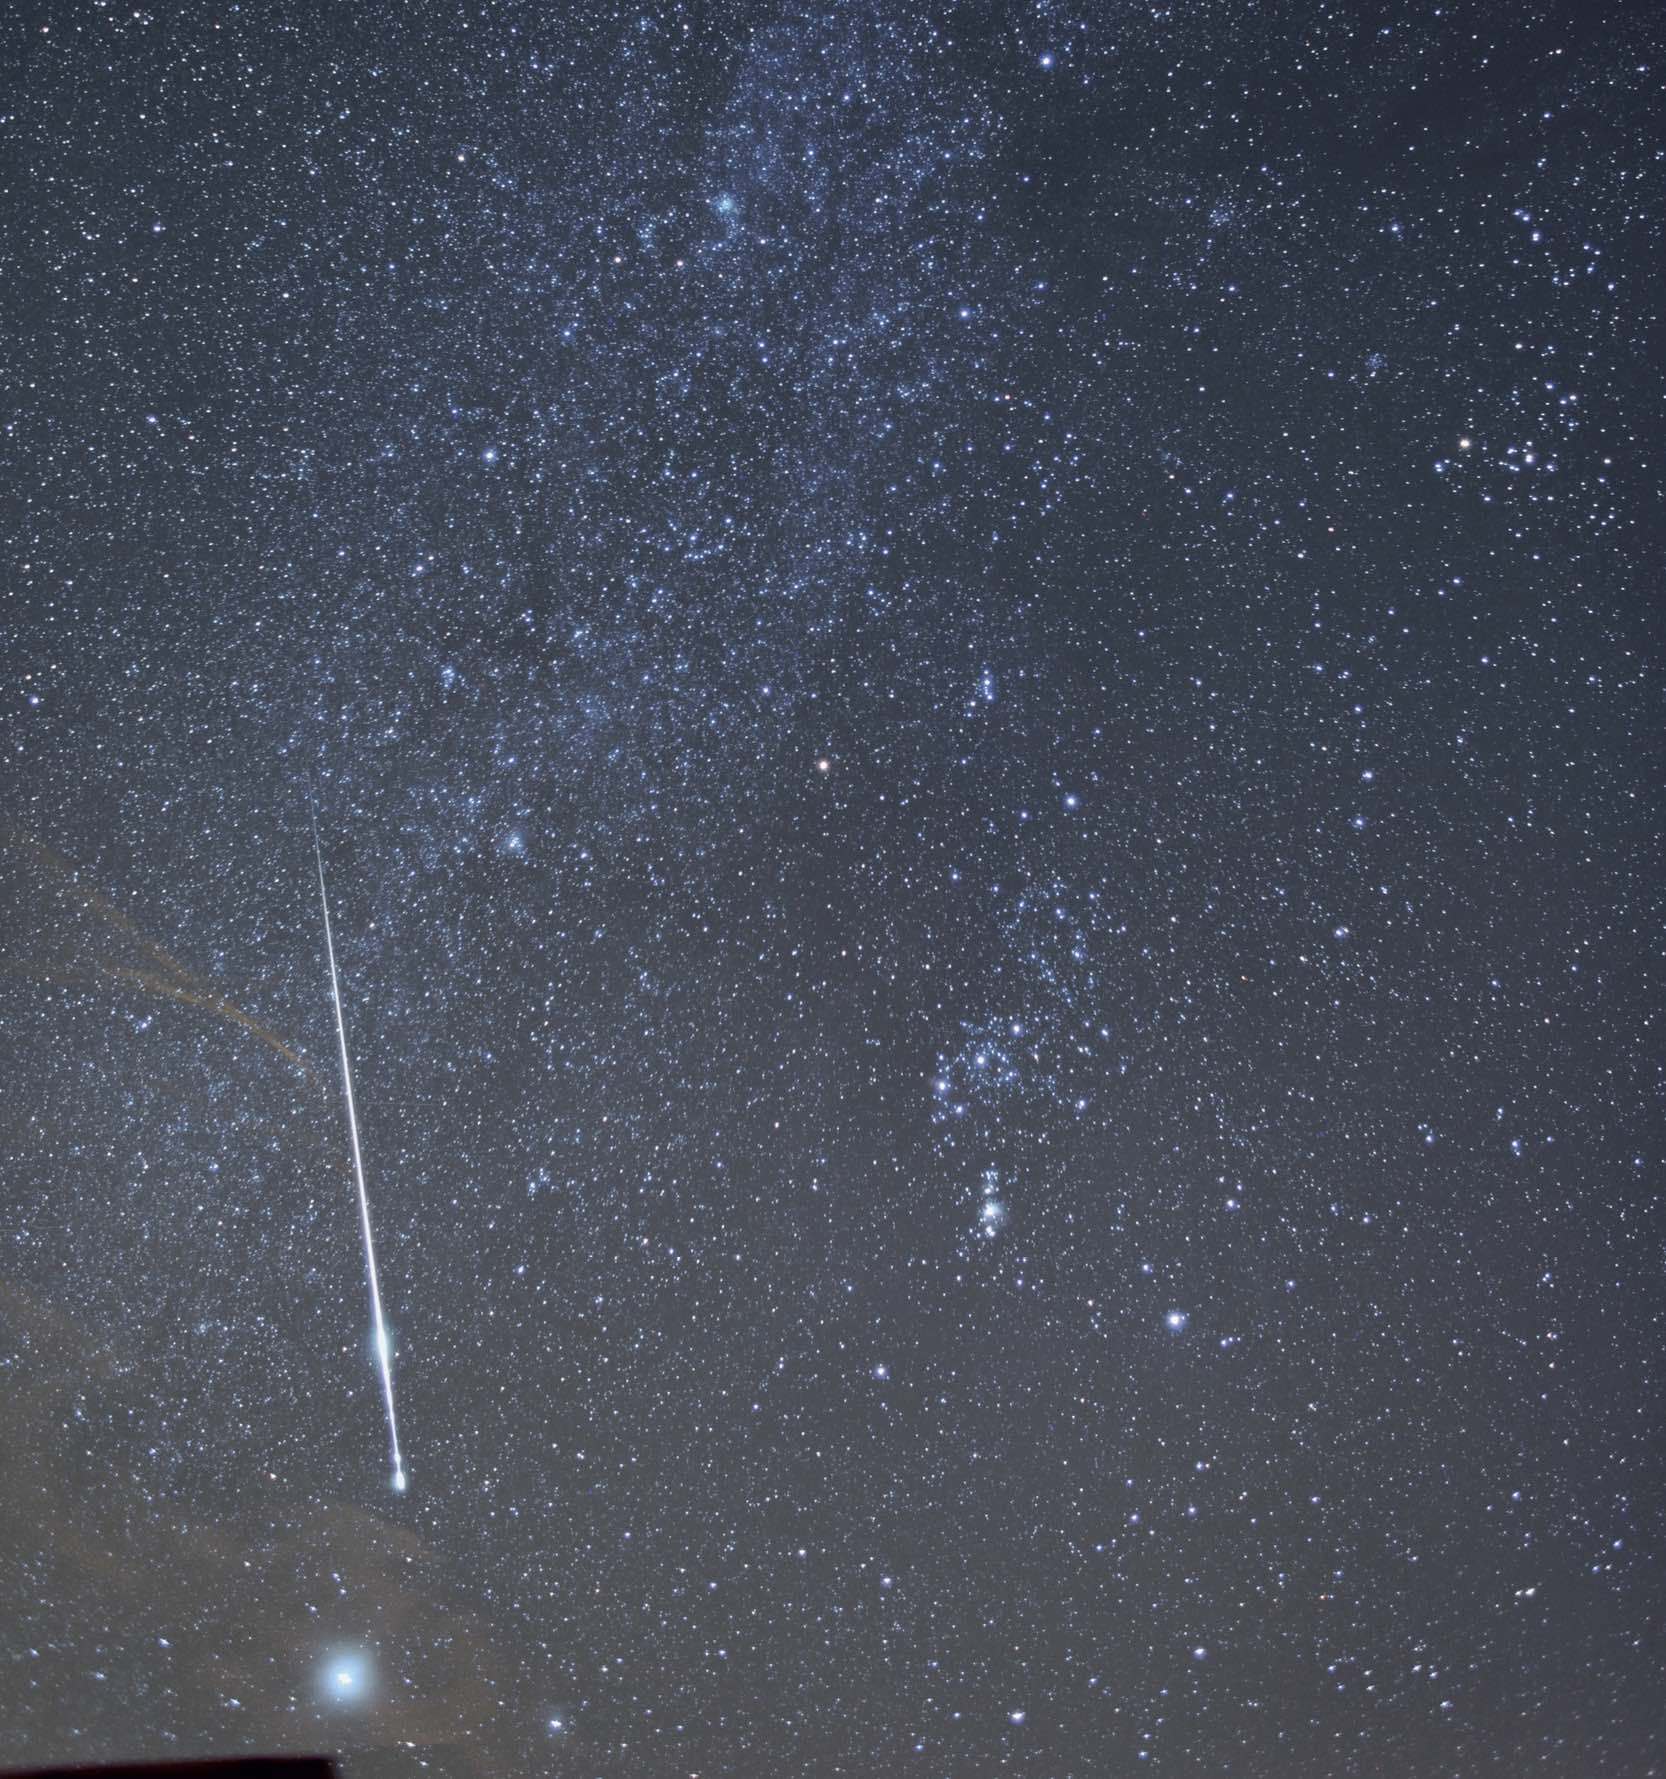 Bardzo jasny meteor w pobliżu gwiazdozbioru Oriona. Zostawił on nawet niewielki "dymny" ślad widoczny na kolejnych klatkach serii ekspozycji. Dane zdjęcia: Canon EOS 5D Mk II, ISO 800, ogniskowa 24mm, przysłona f/2.2. M. Weigand